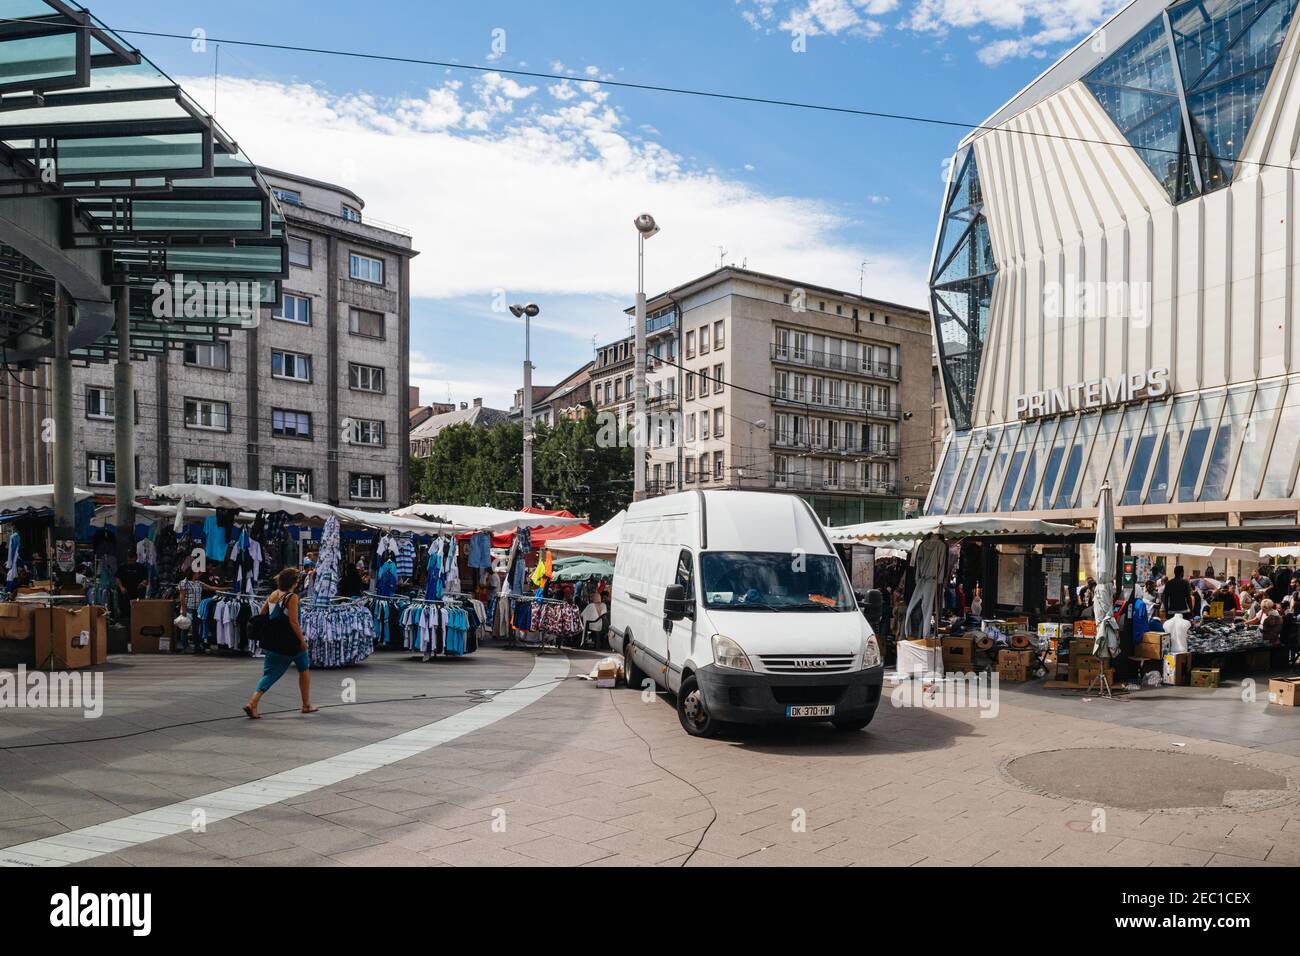 Straßburg, Frankreich - 29. Juli 2017: Große Menschenmenge, die auf der Straßenbahnhaltestelle Homme de Fer und Printemps Store während der Grande Braderie Straßenmesse jährlichen Verkaufsveranstaltung läuft - Iveco van geparkt Stockfoto